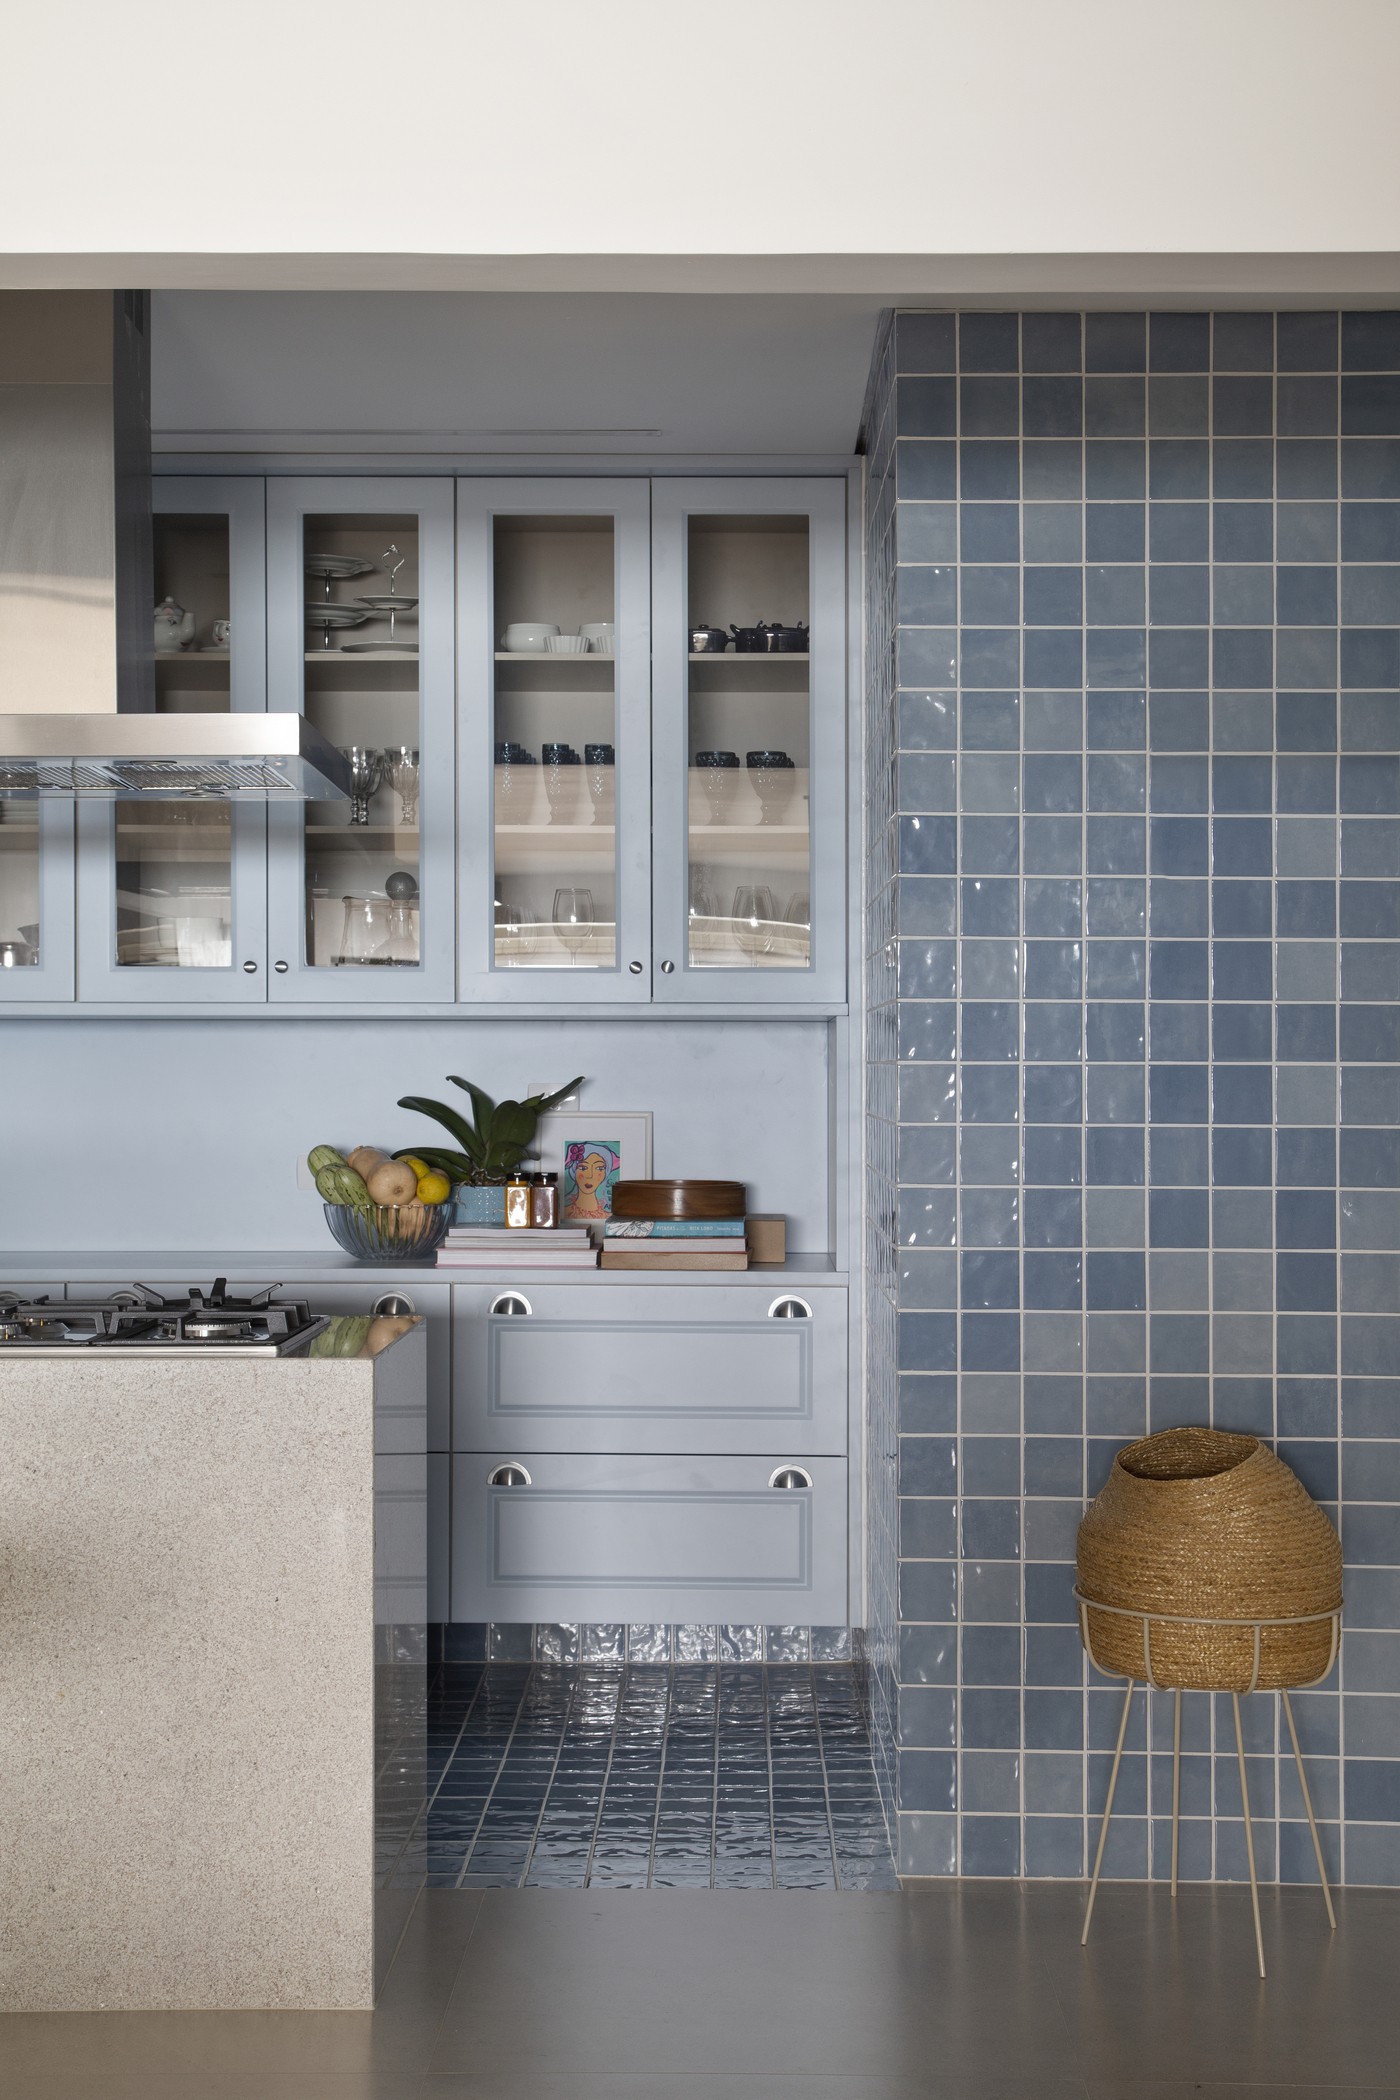 Décor do dia: cozinha azul tem estilo retrô e integração com a área social (Foto: Denilson Machado / MCA Estúdio )